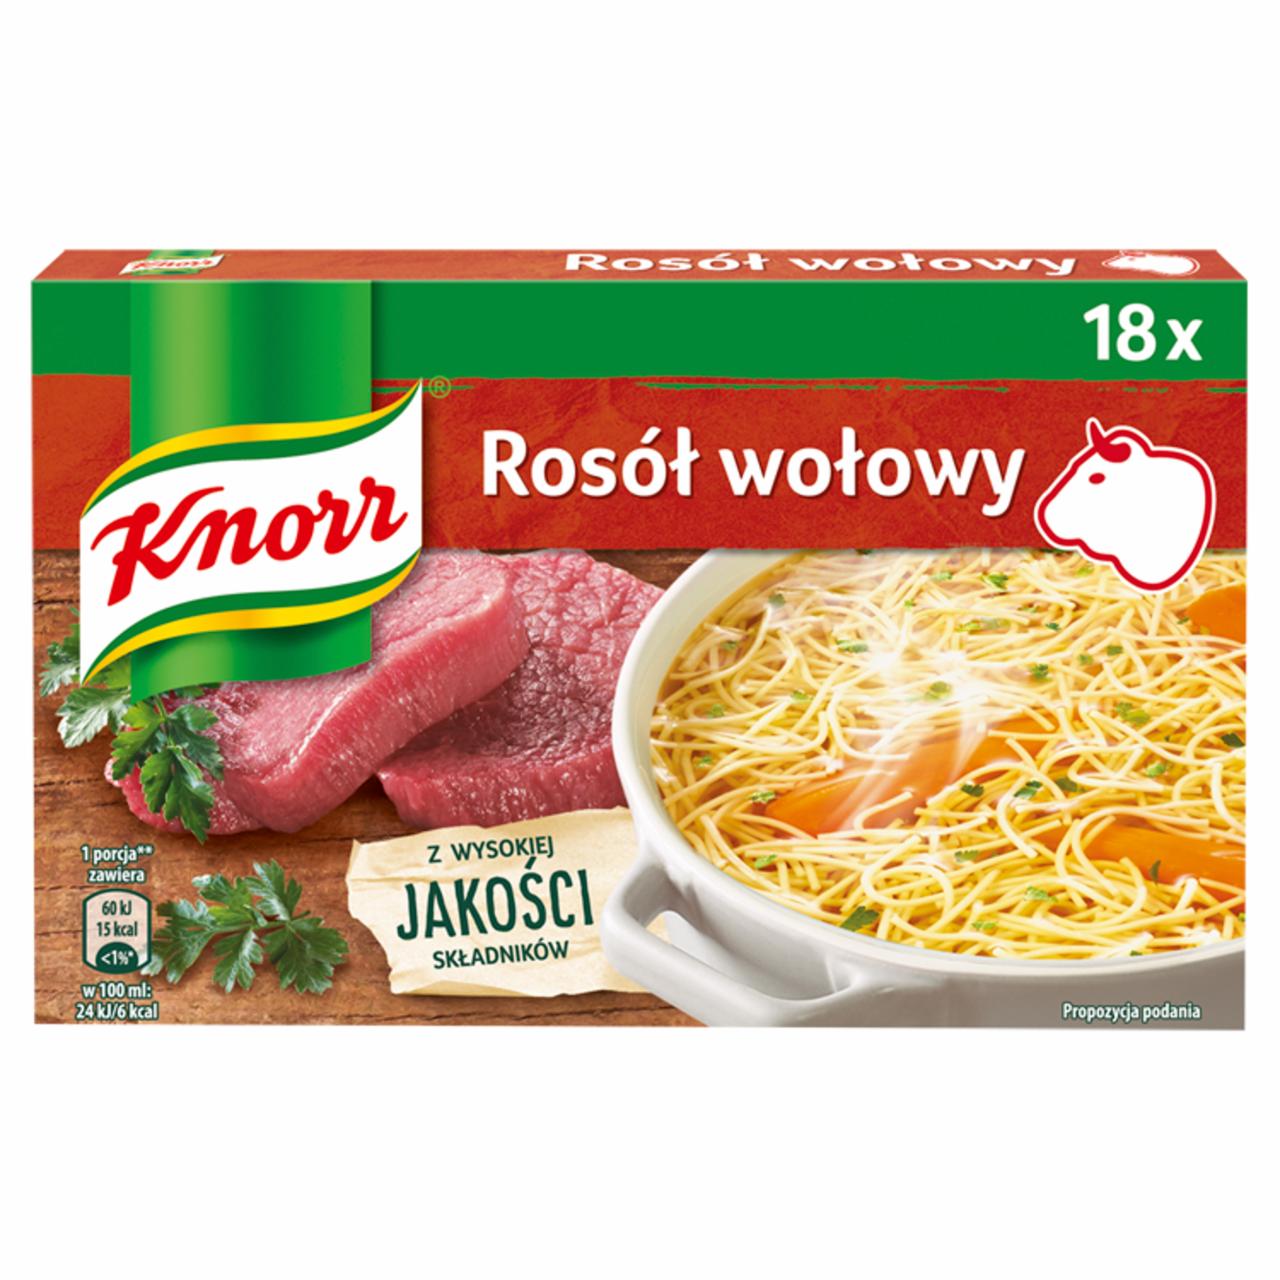 Zdjęcia - Knorr Rosół wołowy 180 g (18 x 10 g)